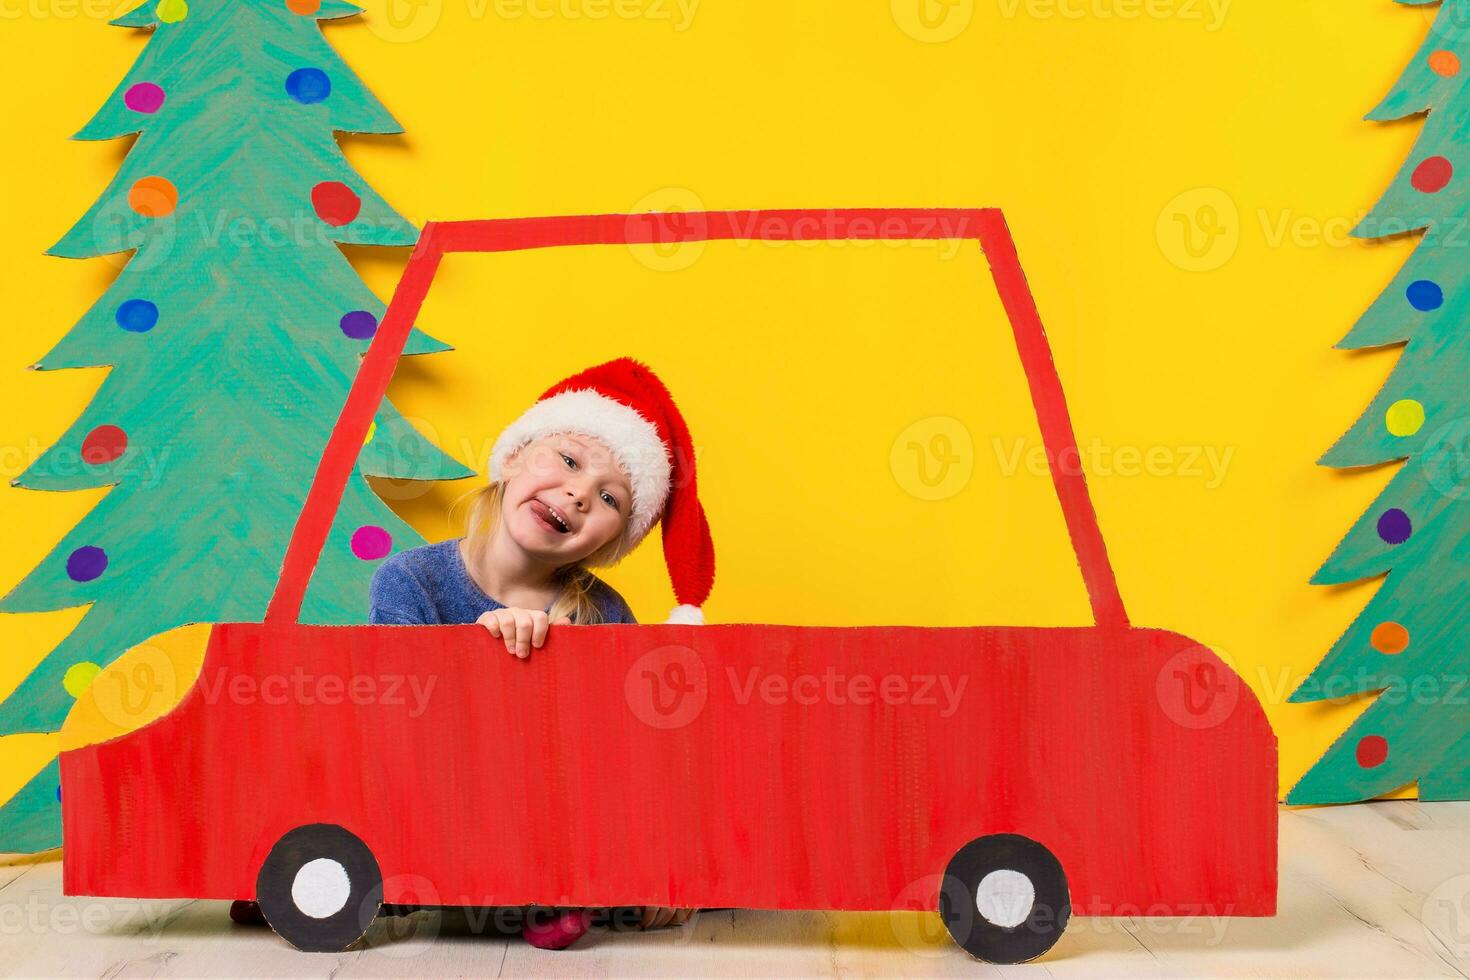 criança dentro vermelho Natal carro. natal feriado conceito foto